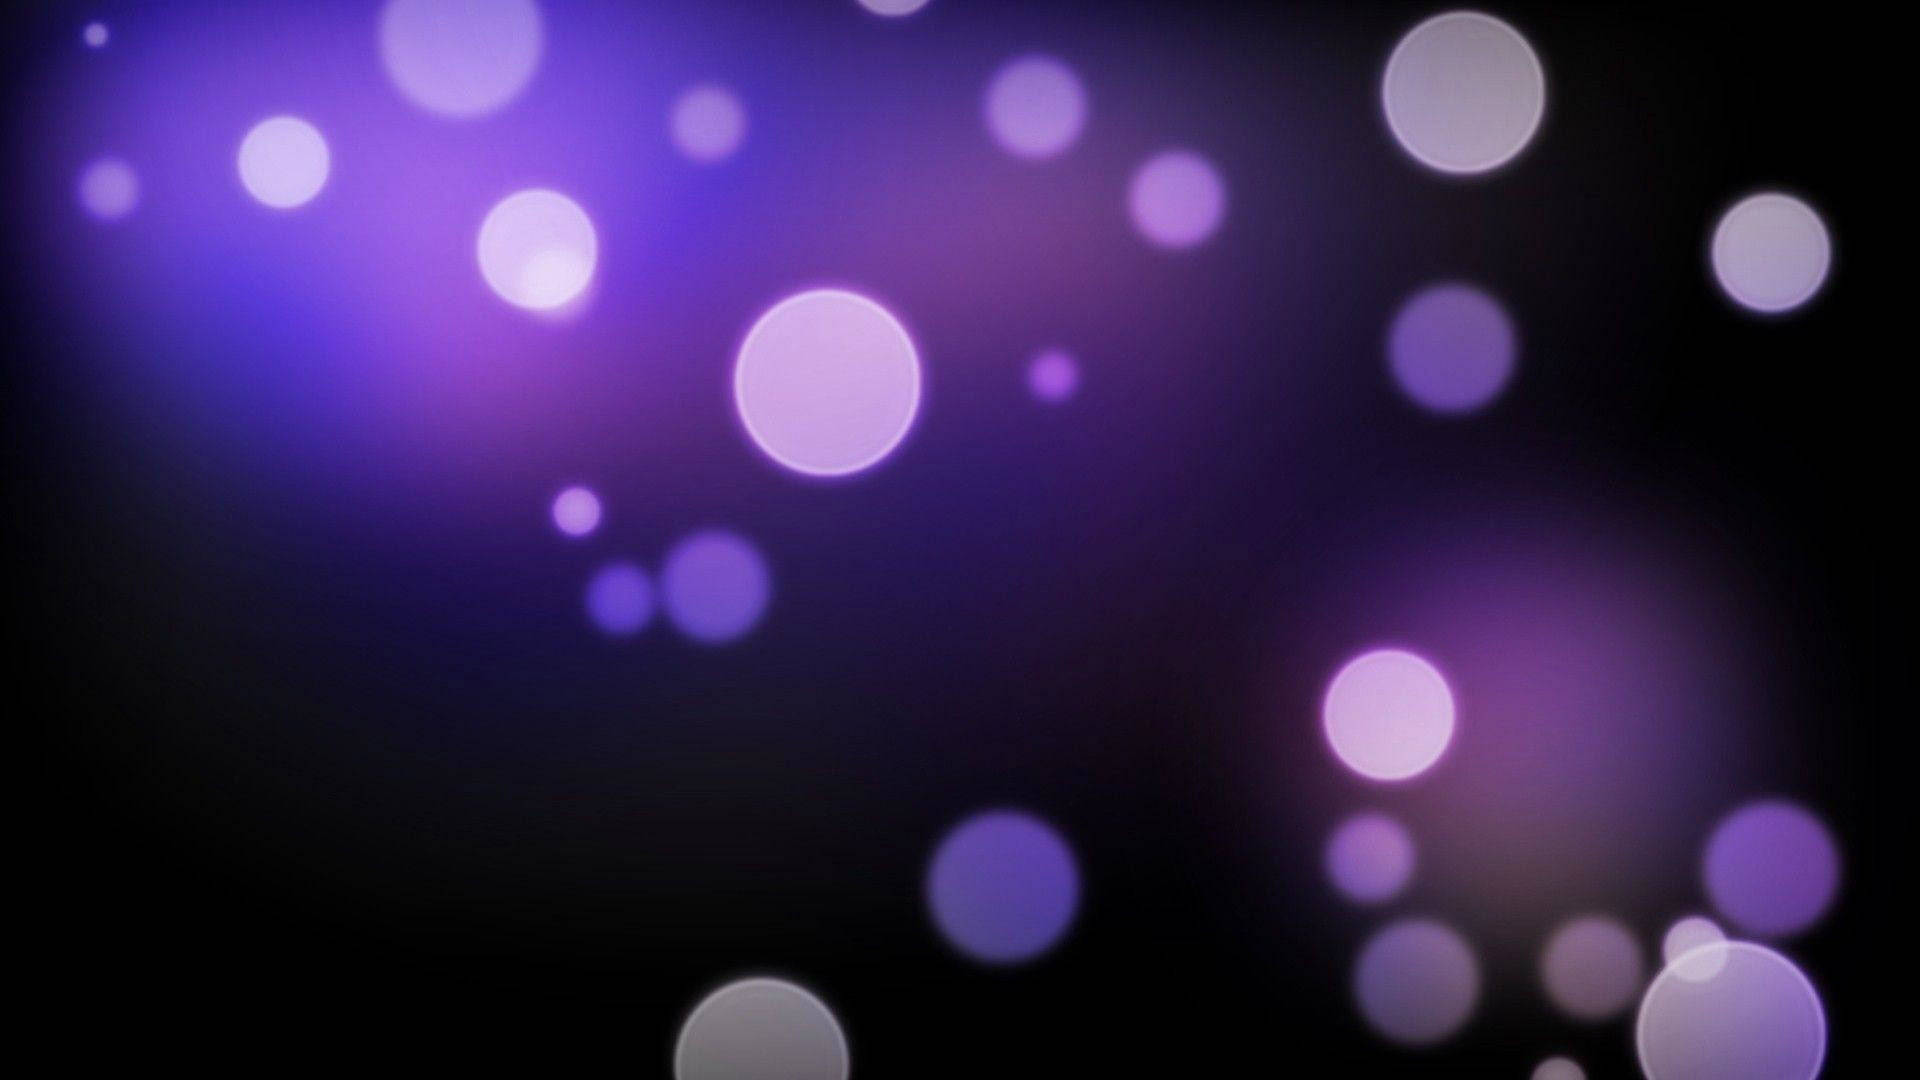 Dark Purple Gradient With Lights